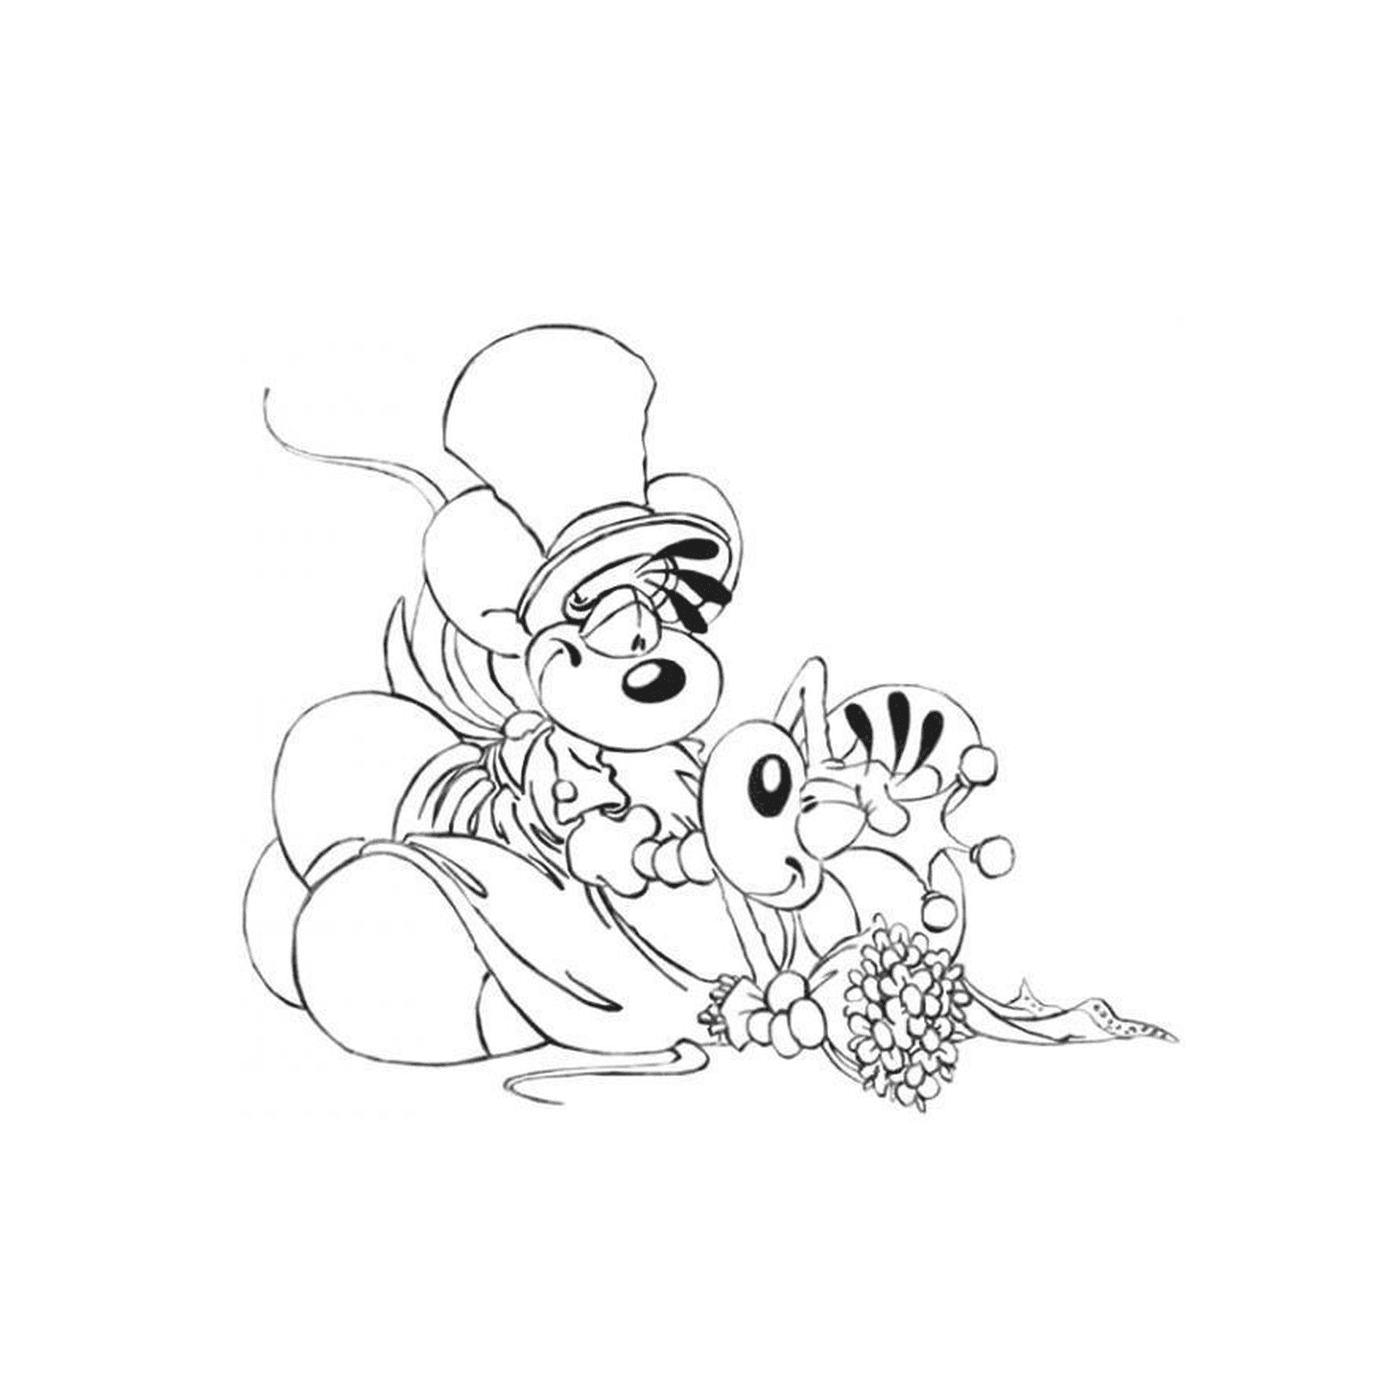  Um rato segurando flores 